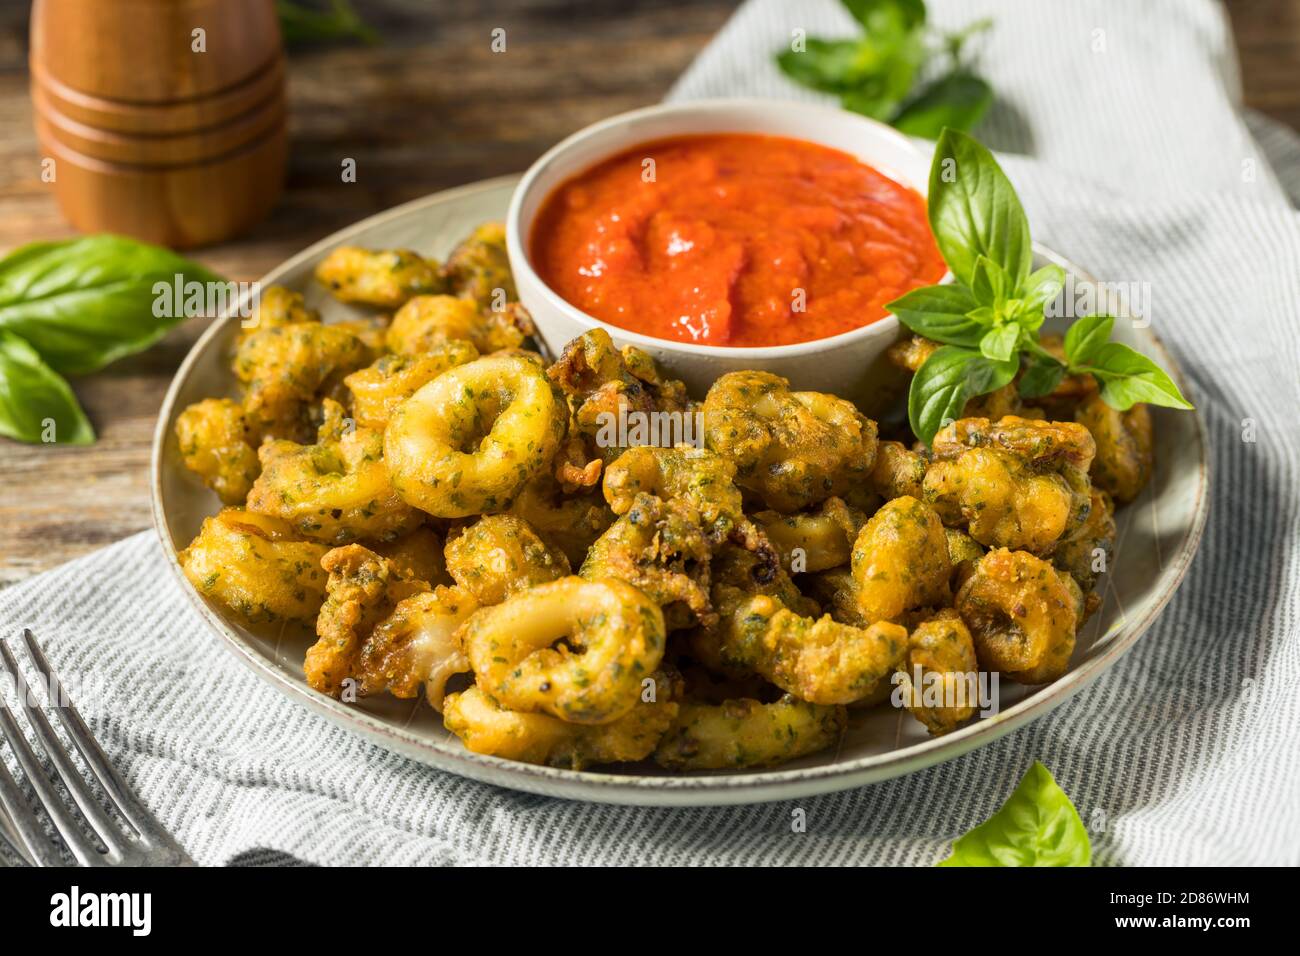 Homemade Deep Fried Calamari Appetizer with Marinara Sauce Stock Photo